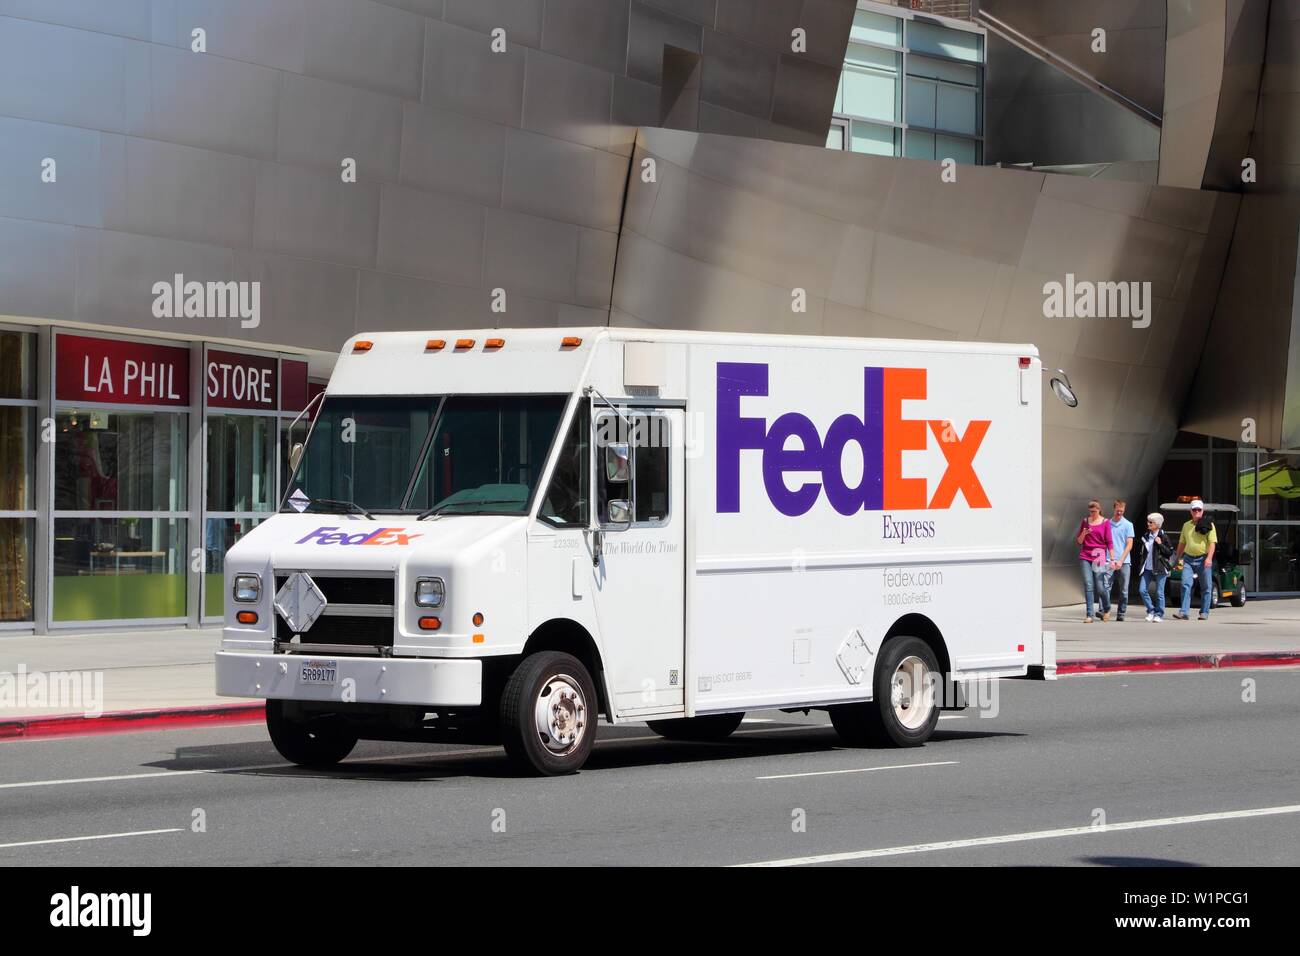 LOS ANGELES, USA - April 5, 2014: Leute gehen von FedEx van in Los Angeles,  USA geparkt. Fedex ist einer der größten Paket Lieferung Unternehmen  weltweit Stockfotografie - Alamy